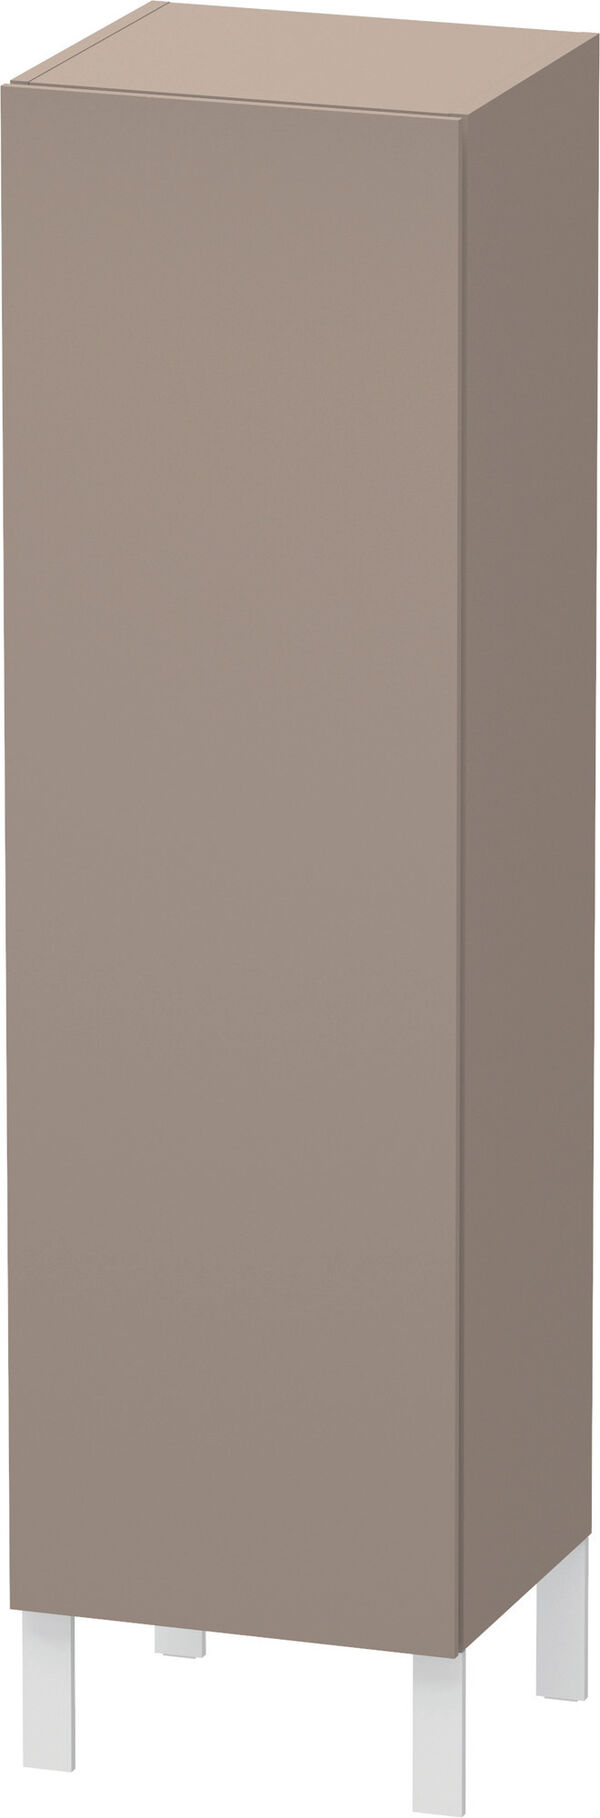 Armadietto laterale L-Cube l:40 cm, a:132 cm, p:36,3 cm 1 porta, cerniere 3 ripiani in vetro image number 0